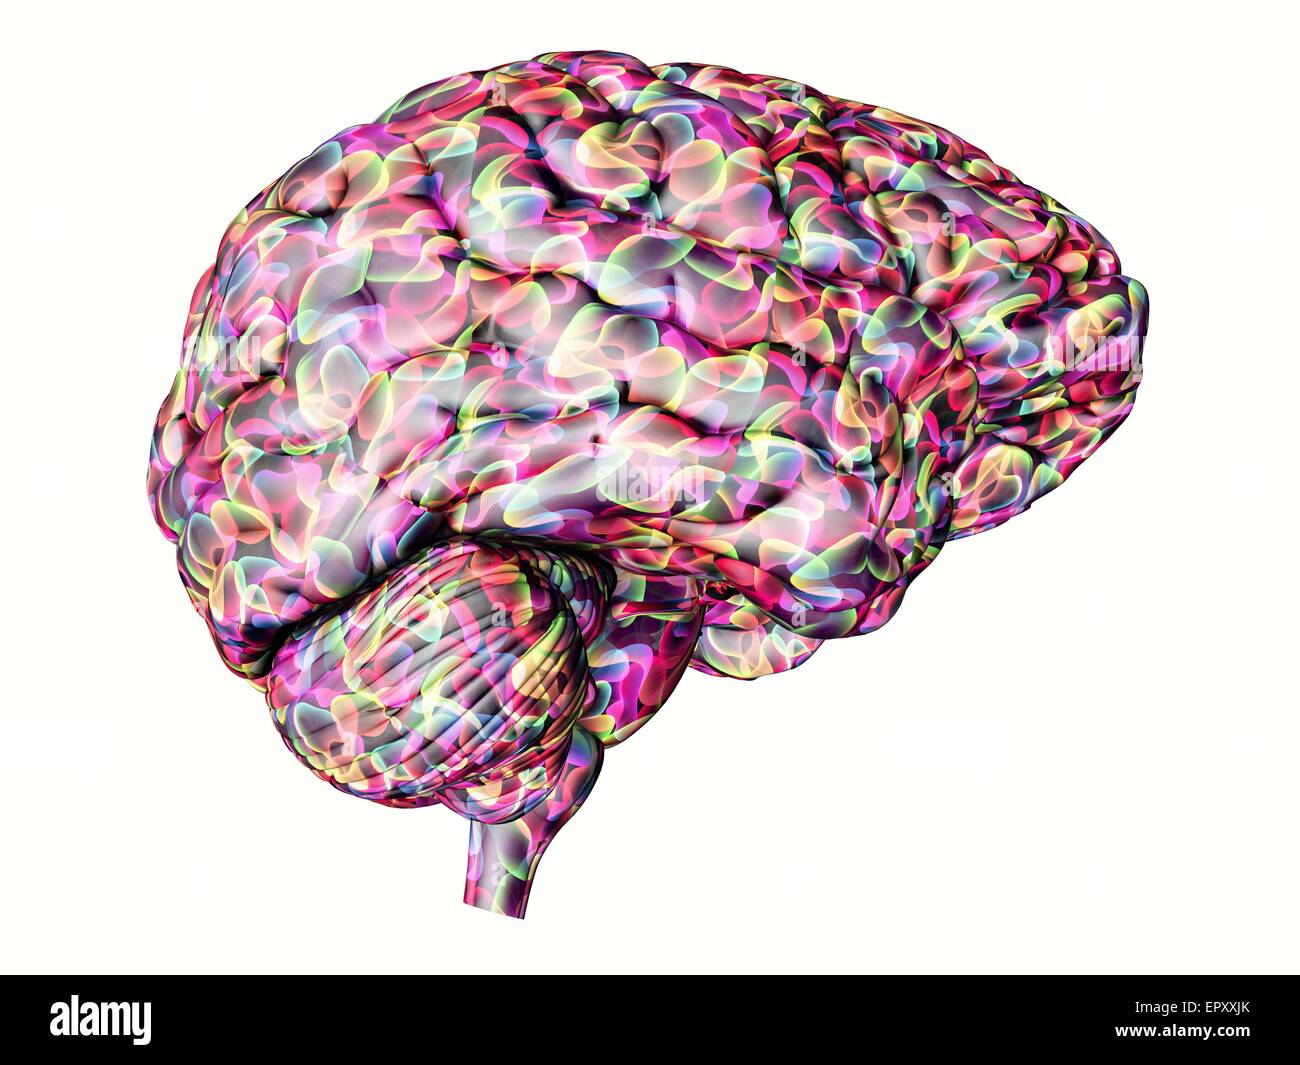 Il cervello. Calcolatore astratto illustrazione di una vista laterale di un cervello umano. Foto Stock